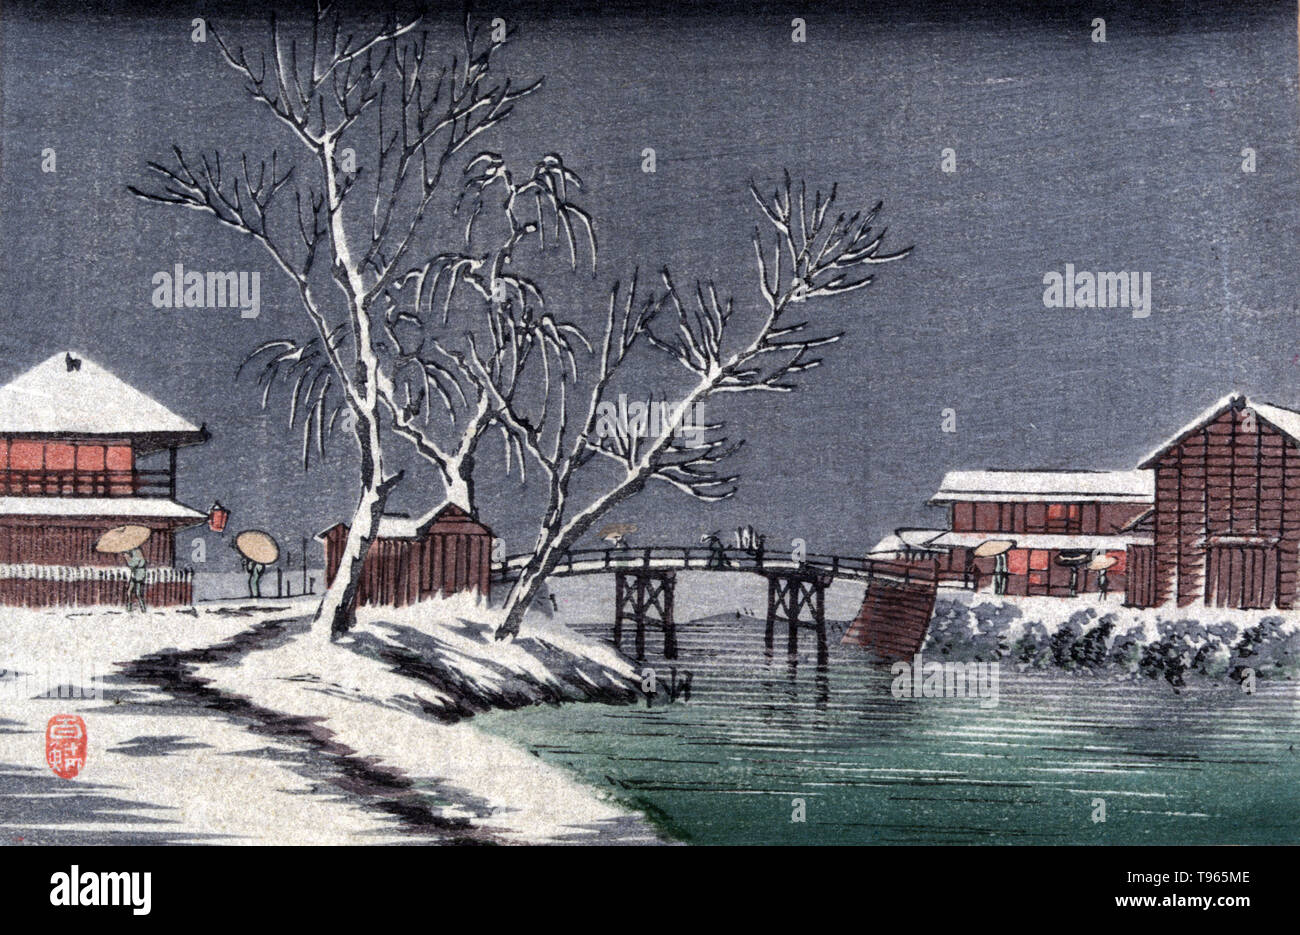 Yuki keine horiwari. Kanal im Schnee. Winterlandschaft mit Gebäuden und einer kleinen Brücke über den Kanal. Ukiyo-e (Bilder der fließenden Welt) ist ein Genre der japanischen Kunst, die vom 17. bis 19. Jahrhundert blühte. Ukiyo-e war zentral für die Wahrnehmung des Westens für Japanische Kunst im späten 19. Jahrhundert. Die Landschaft Genre hat kommen die westlichen Auffassungen von Ukiyo-e zu beherrschen. Die japanische Landschaft unterscheidet sich von der westlichen Tradition, da sie stärker auf die Vorstellung verlassen, Zusammensetzung, und die Atmosphäre als auf die strikte Einhaltung der Natur. Kein Künstler gutgeschrieben, ca. 1900-20. Stockfoto